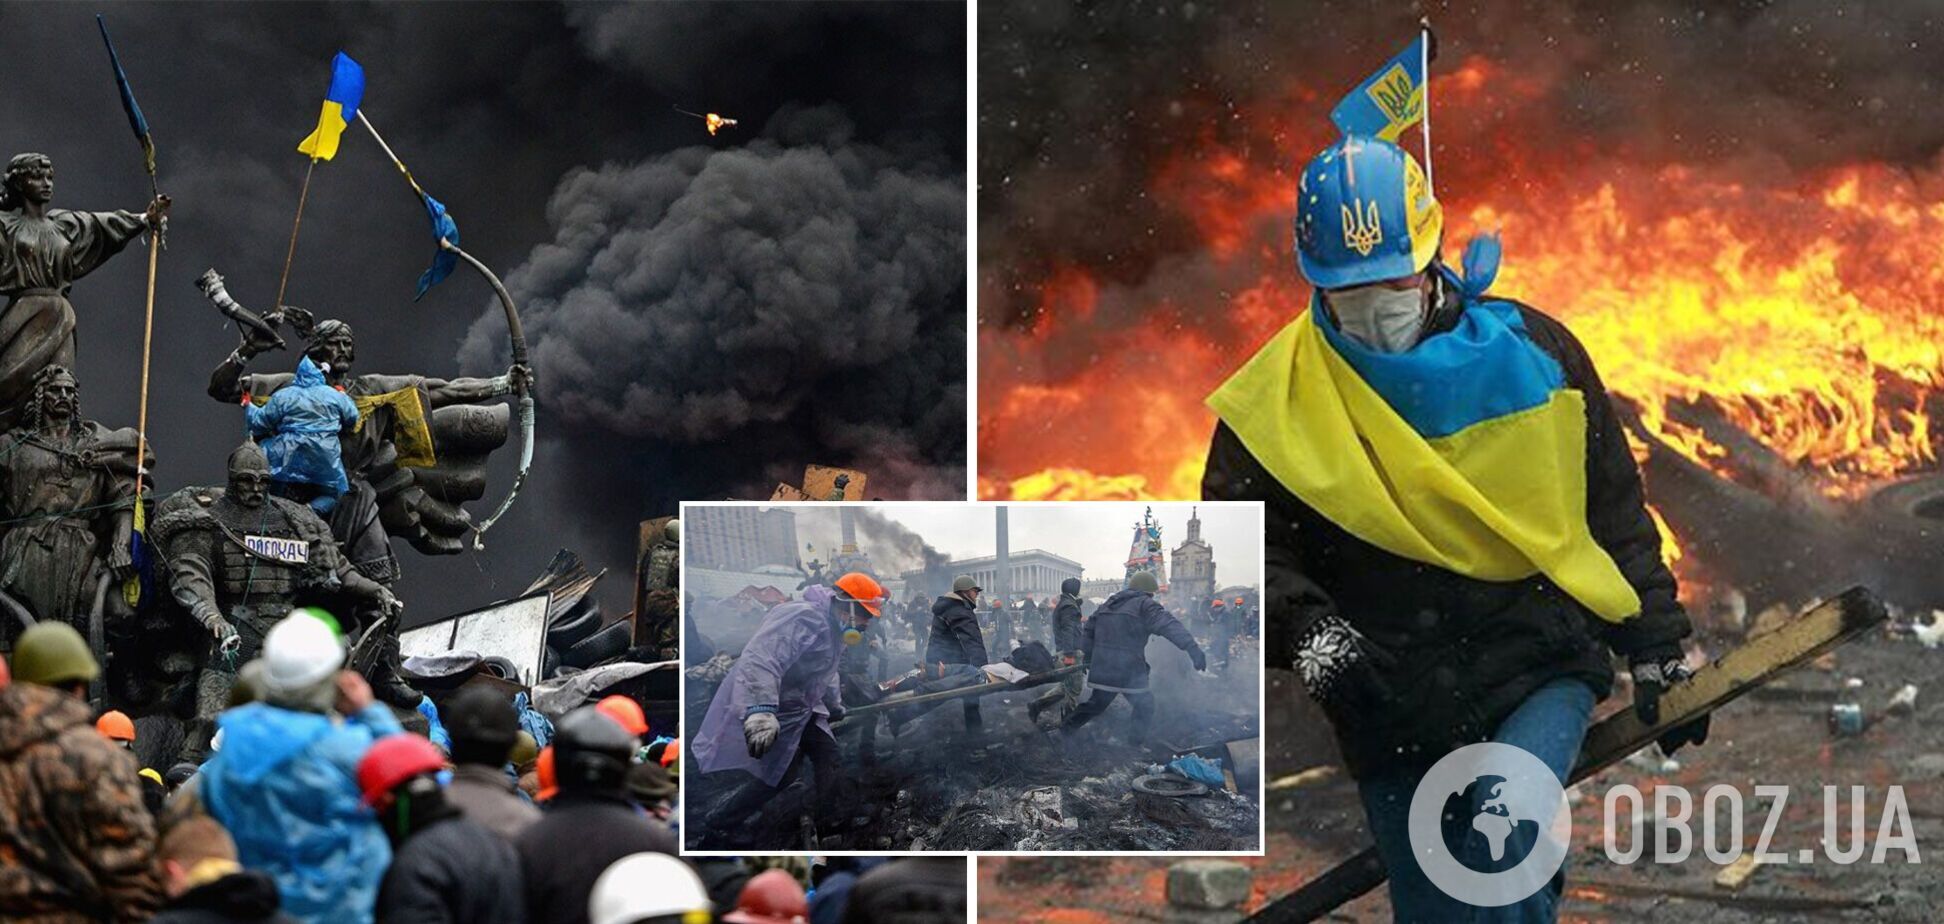 Февраль 2014-го. Майдан горел, мы оплакивали убитых, а Путин начал оккупацию Крыма